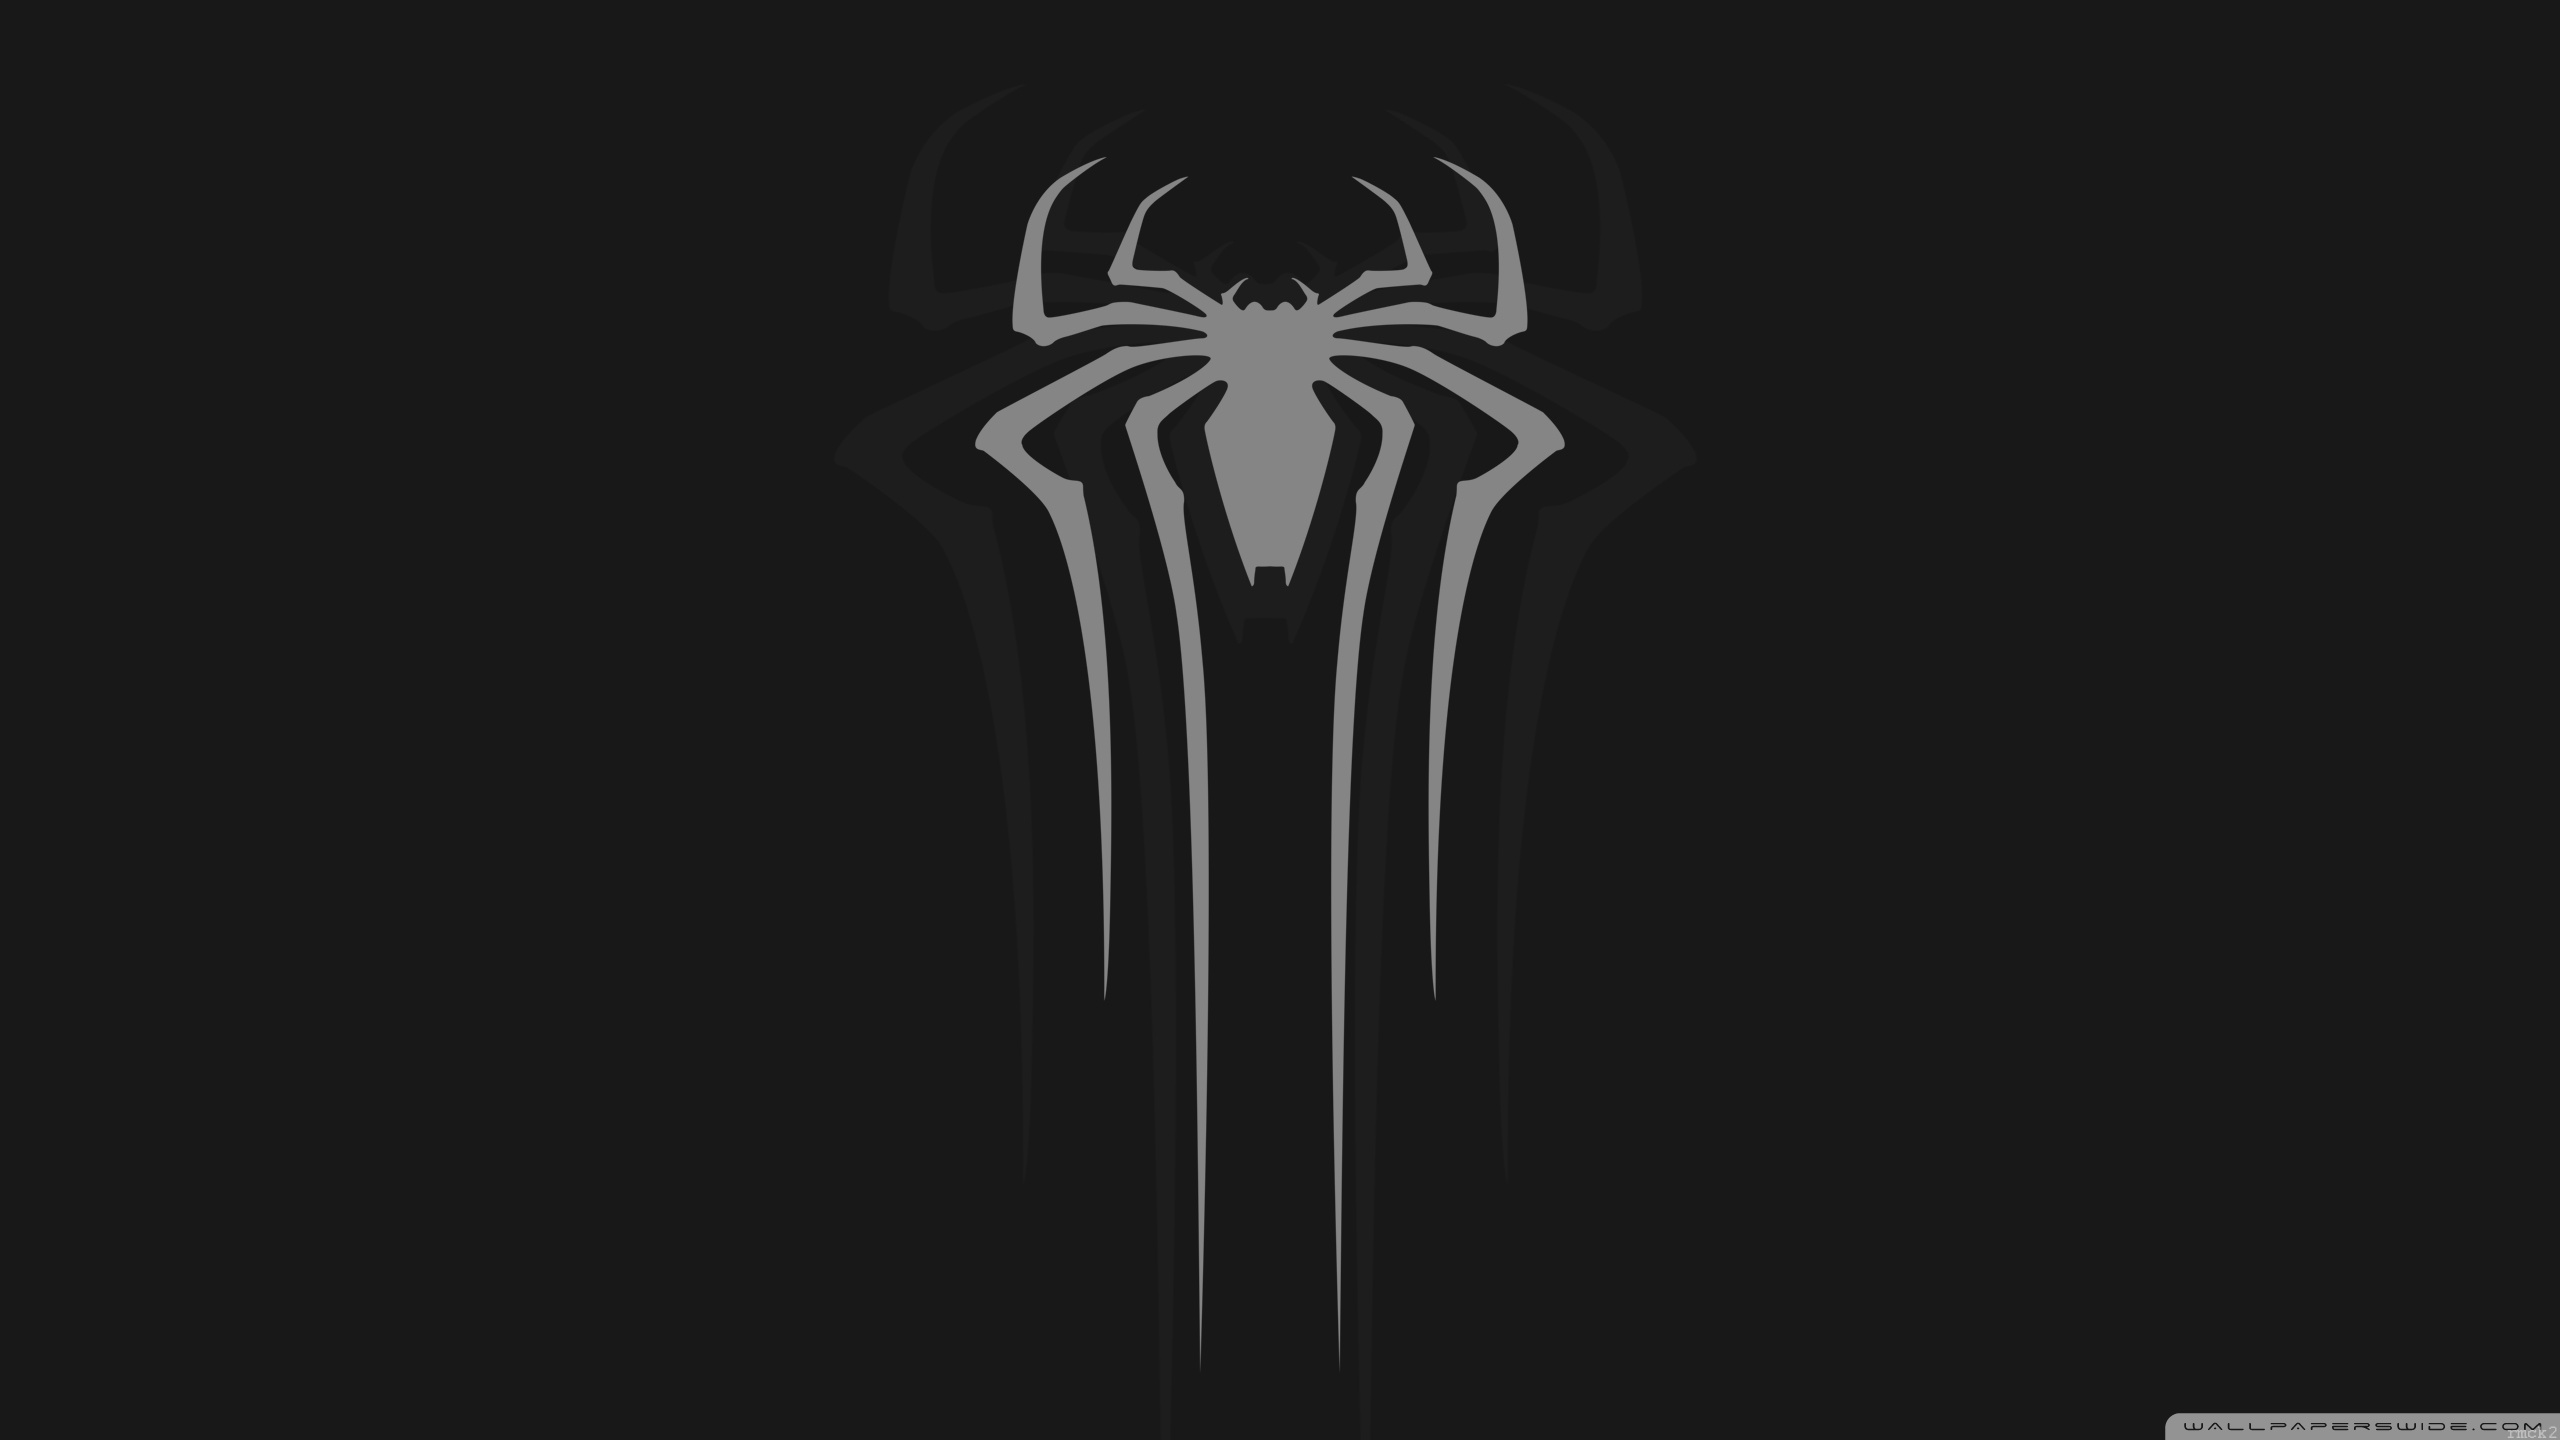 Spider Man White Ultra Hd Desktop Background Wallpaper For 4k Uhd